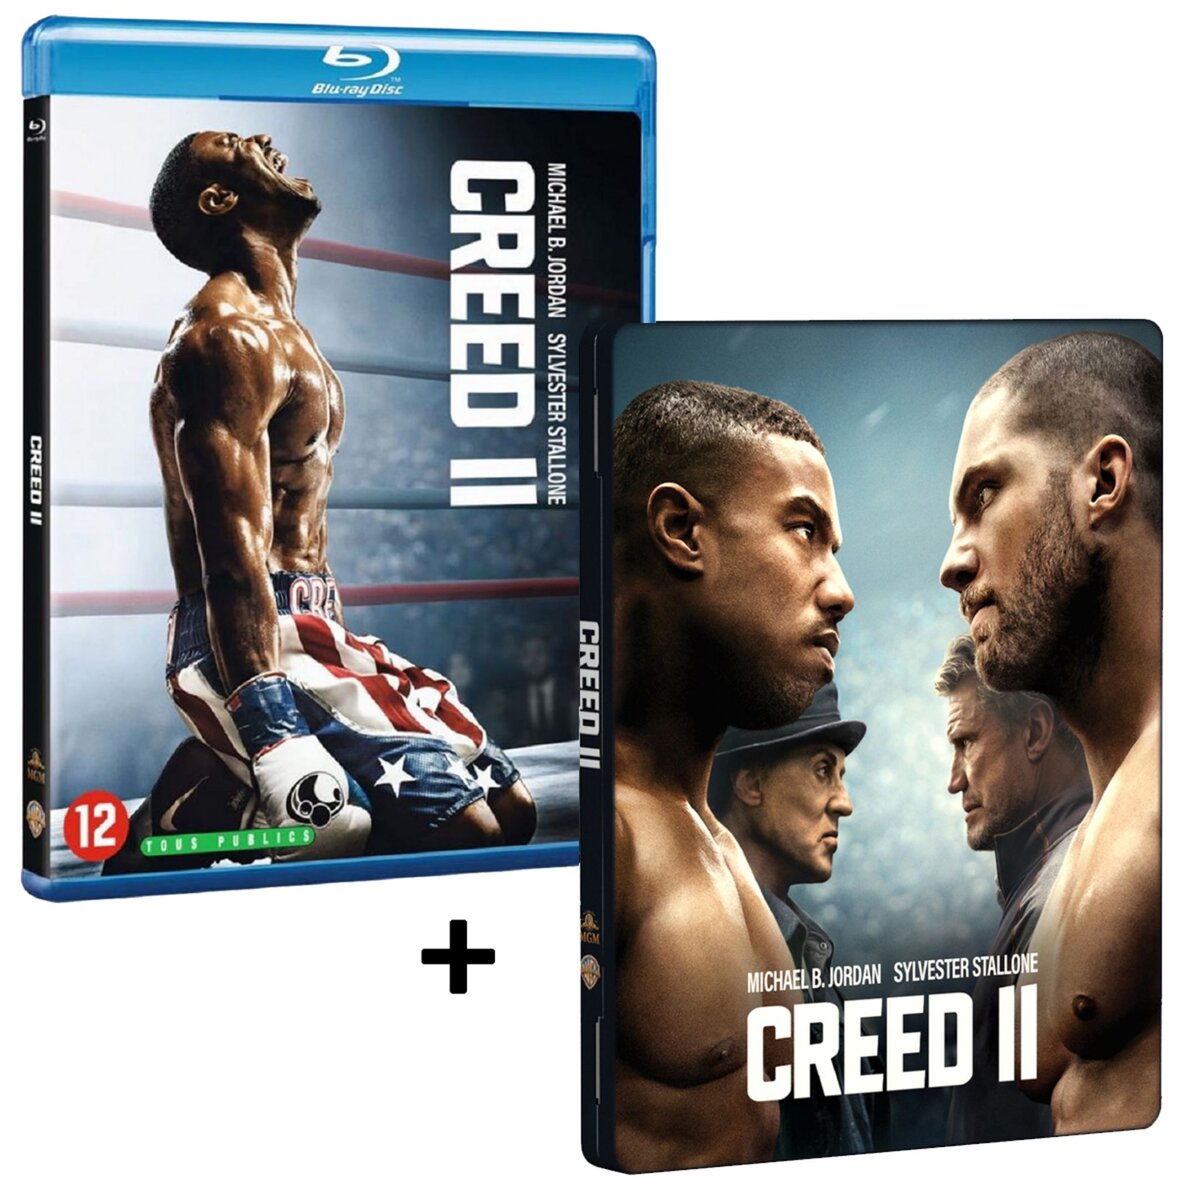 Creed 2 Blu-Ray + Boitier métal Exclusivité Auchan offert